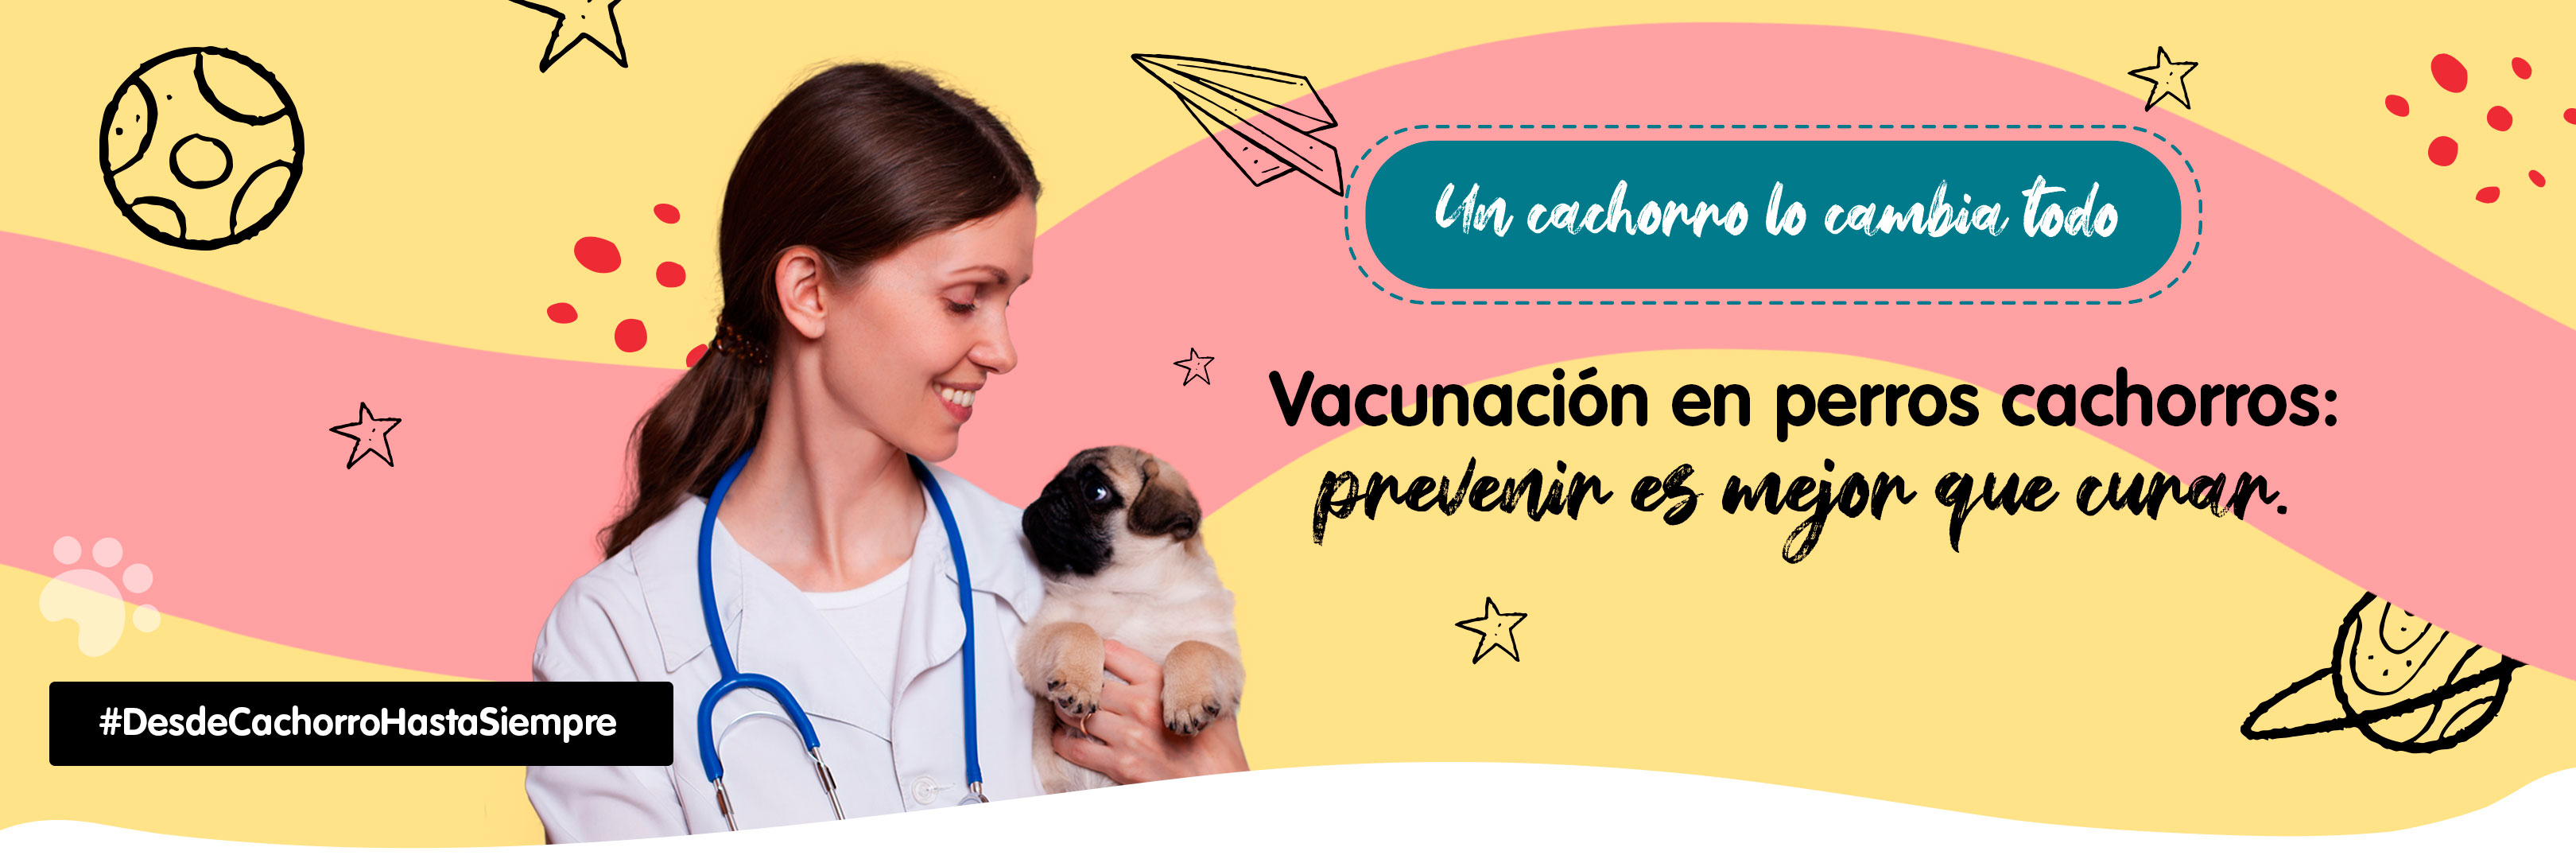 Banner vacunación cachorros